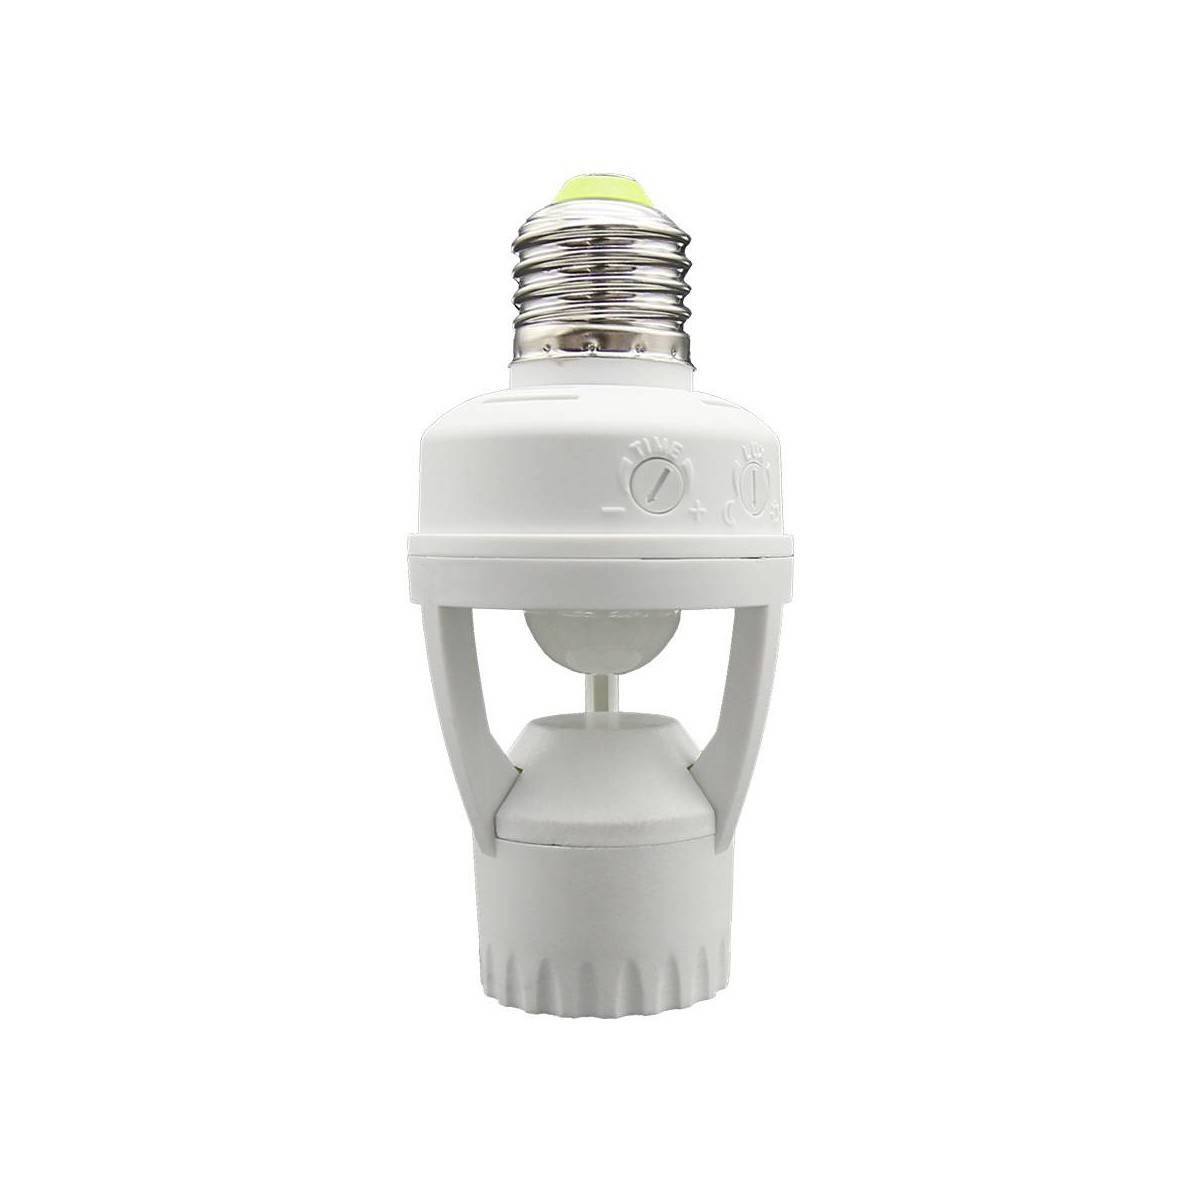 Adapter für E27 LED-Lampe mit PIR-Bewegungssensor